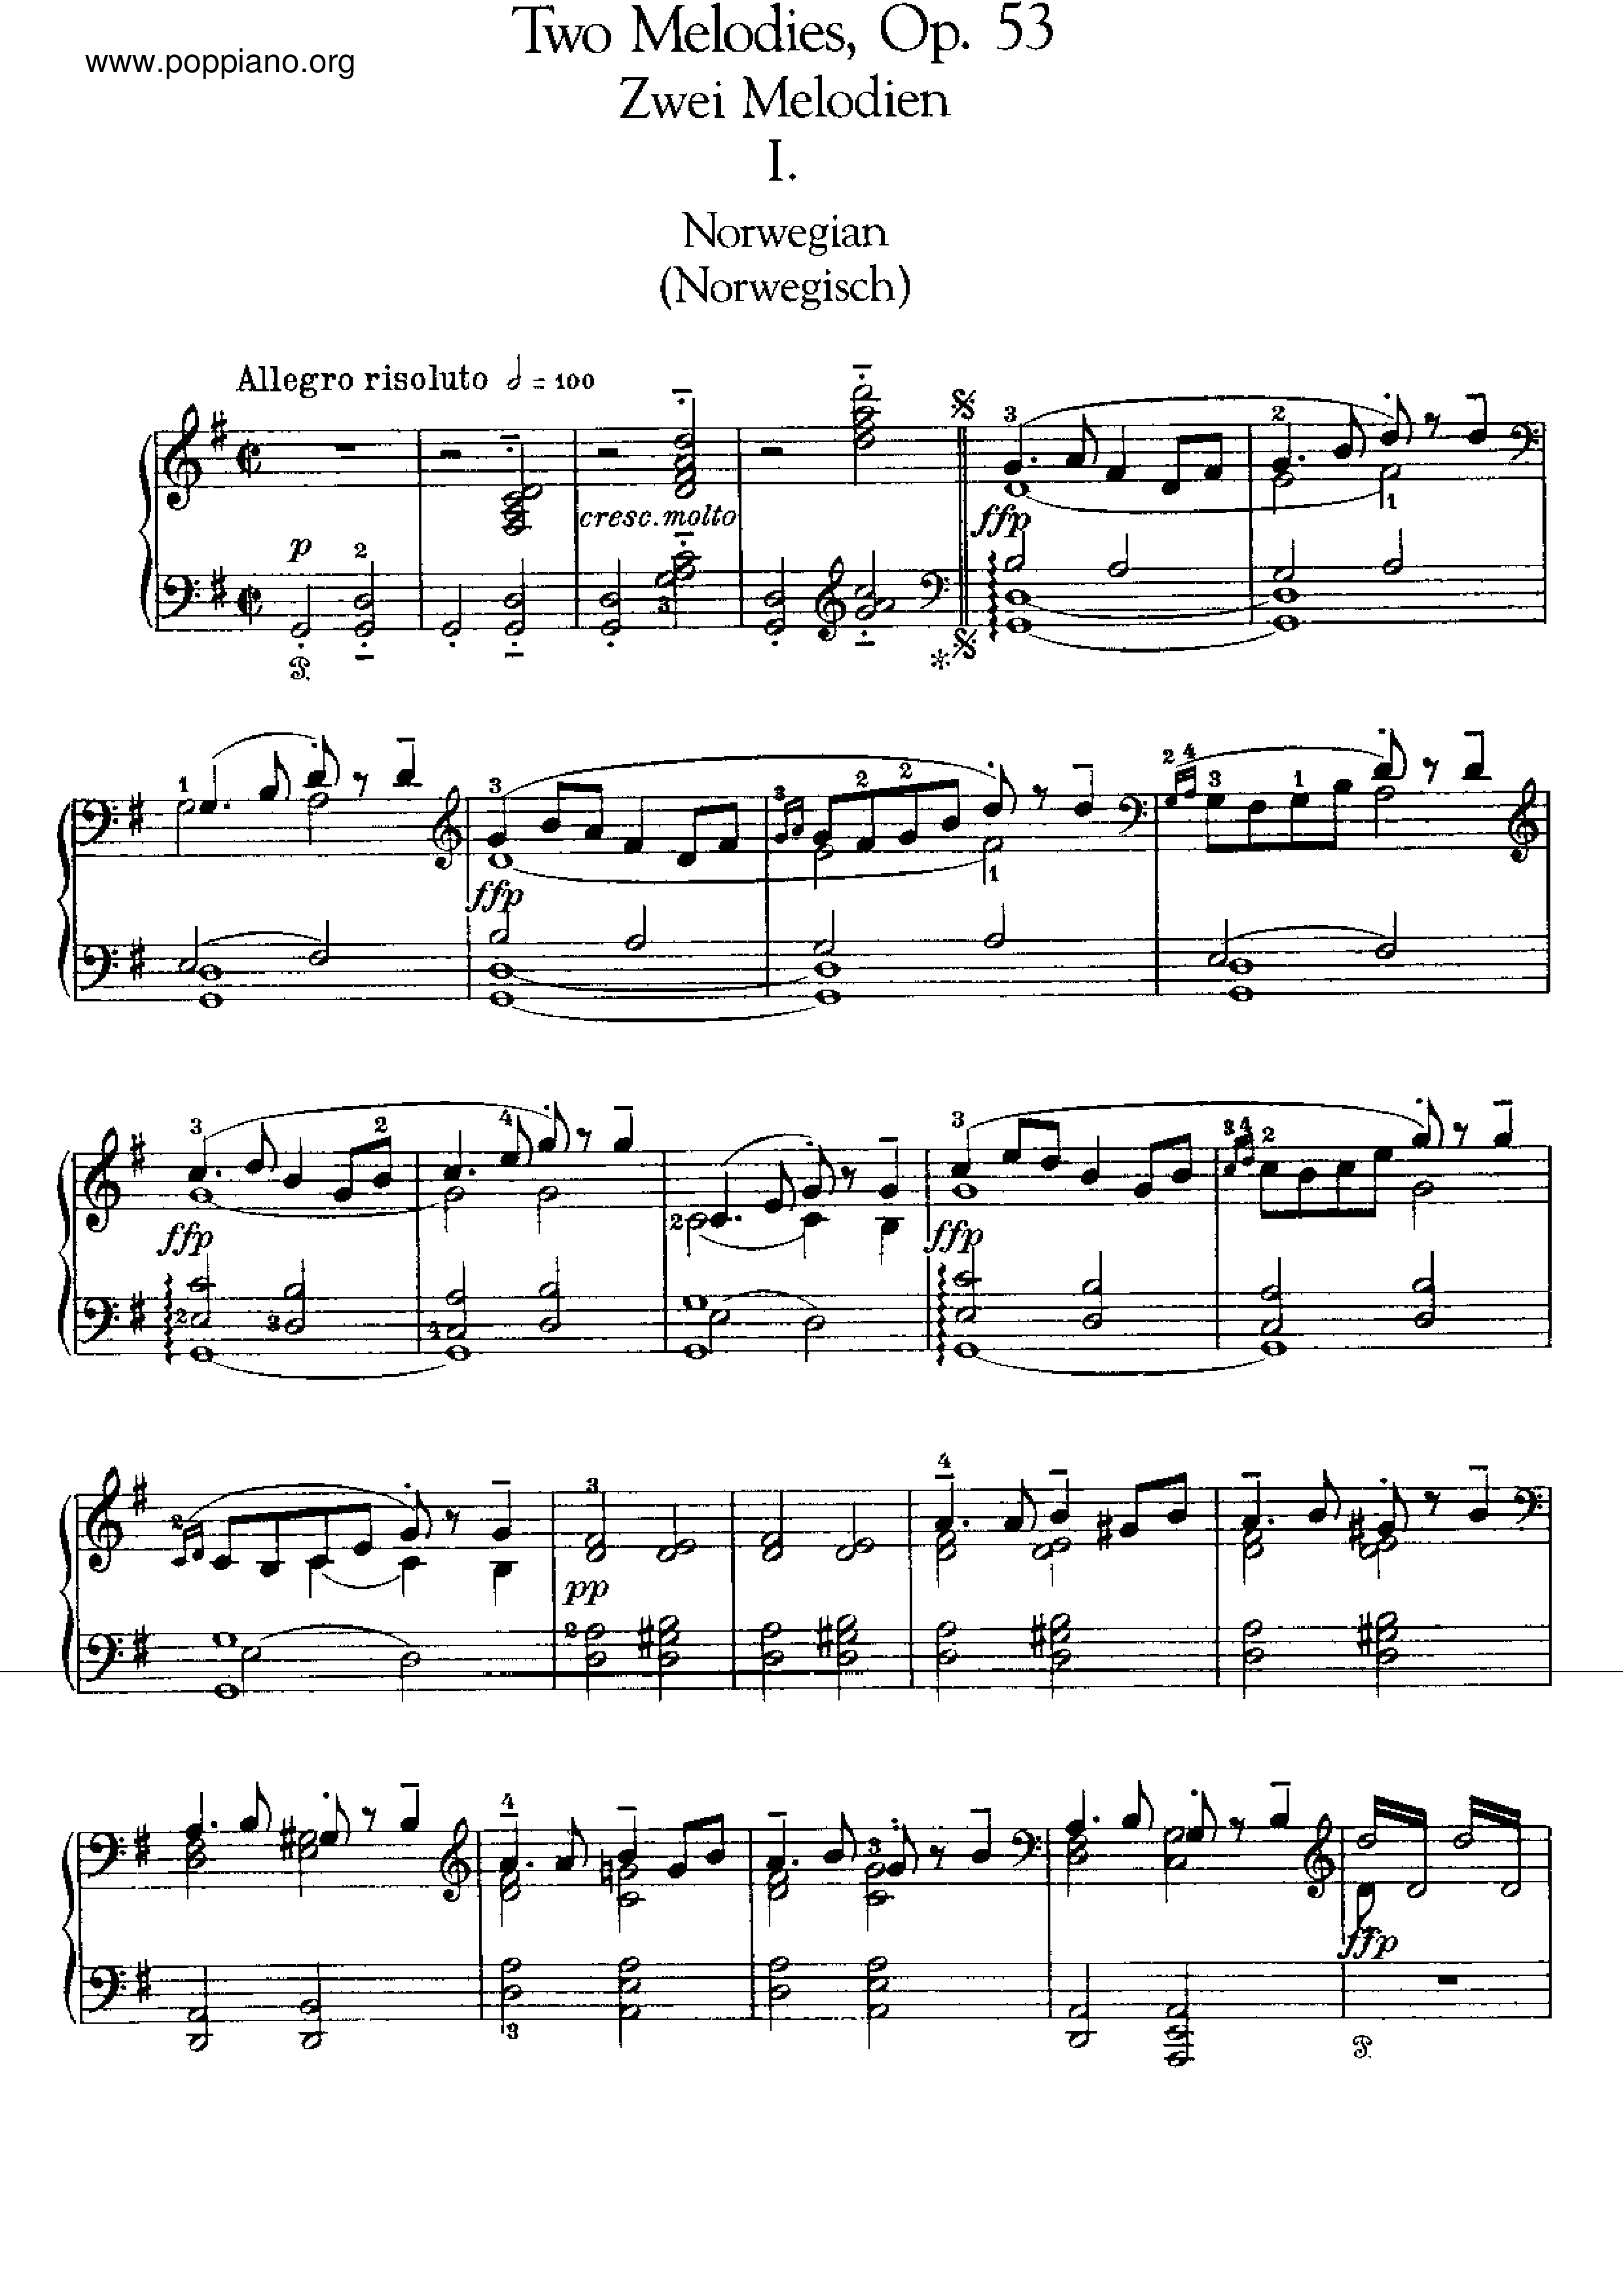 2 Melodies, Op.53ピアノ譜